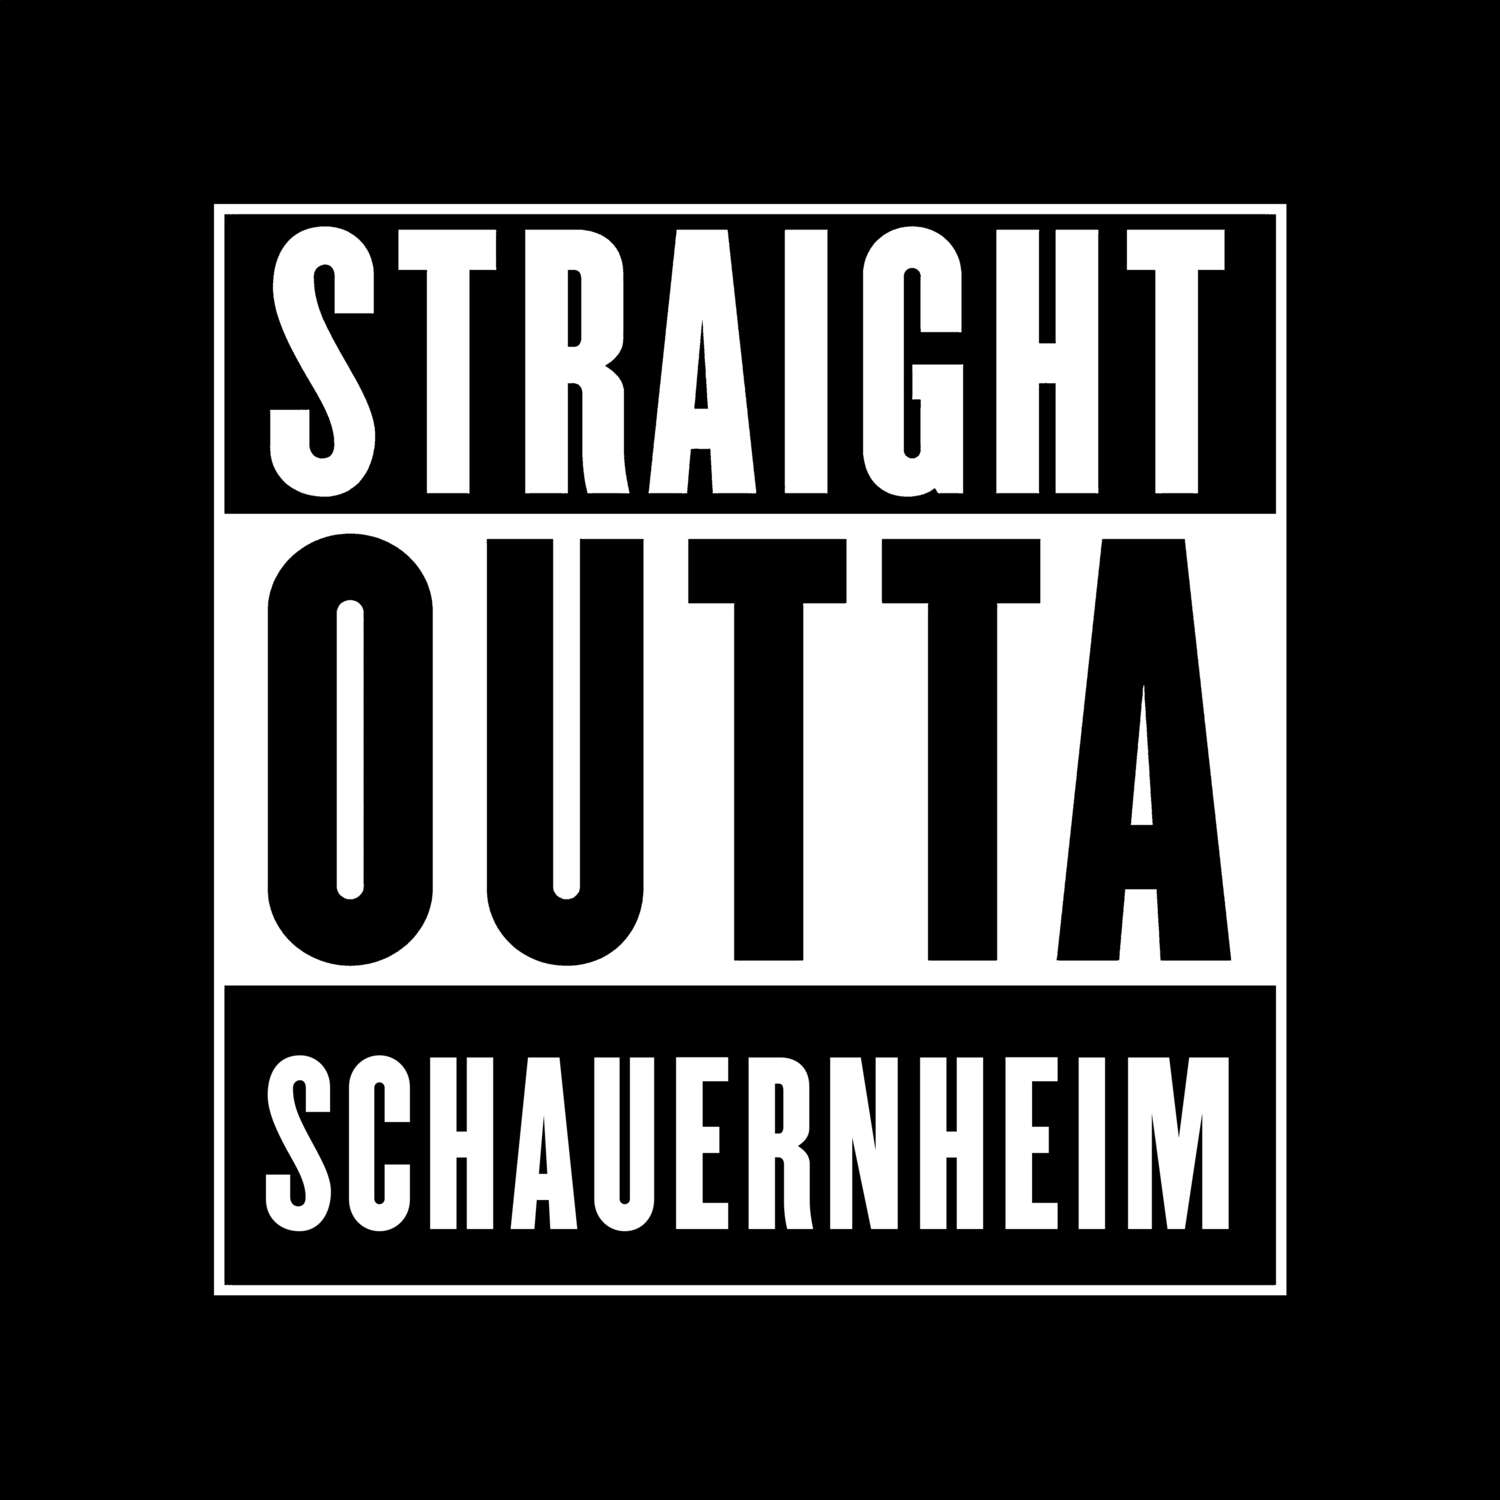 Schauernheim T-Shirt »Straight Outta«